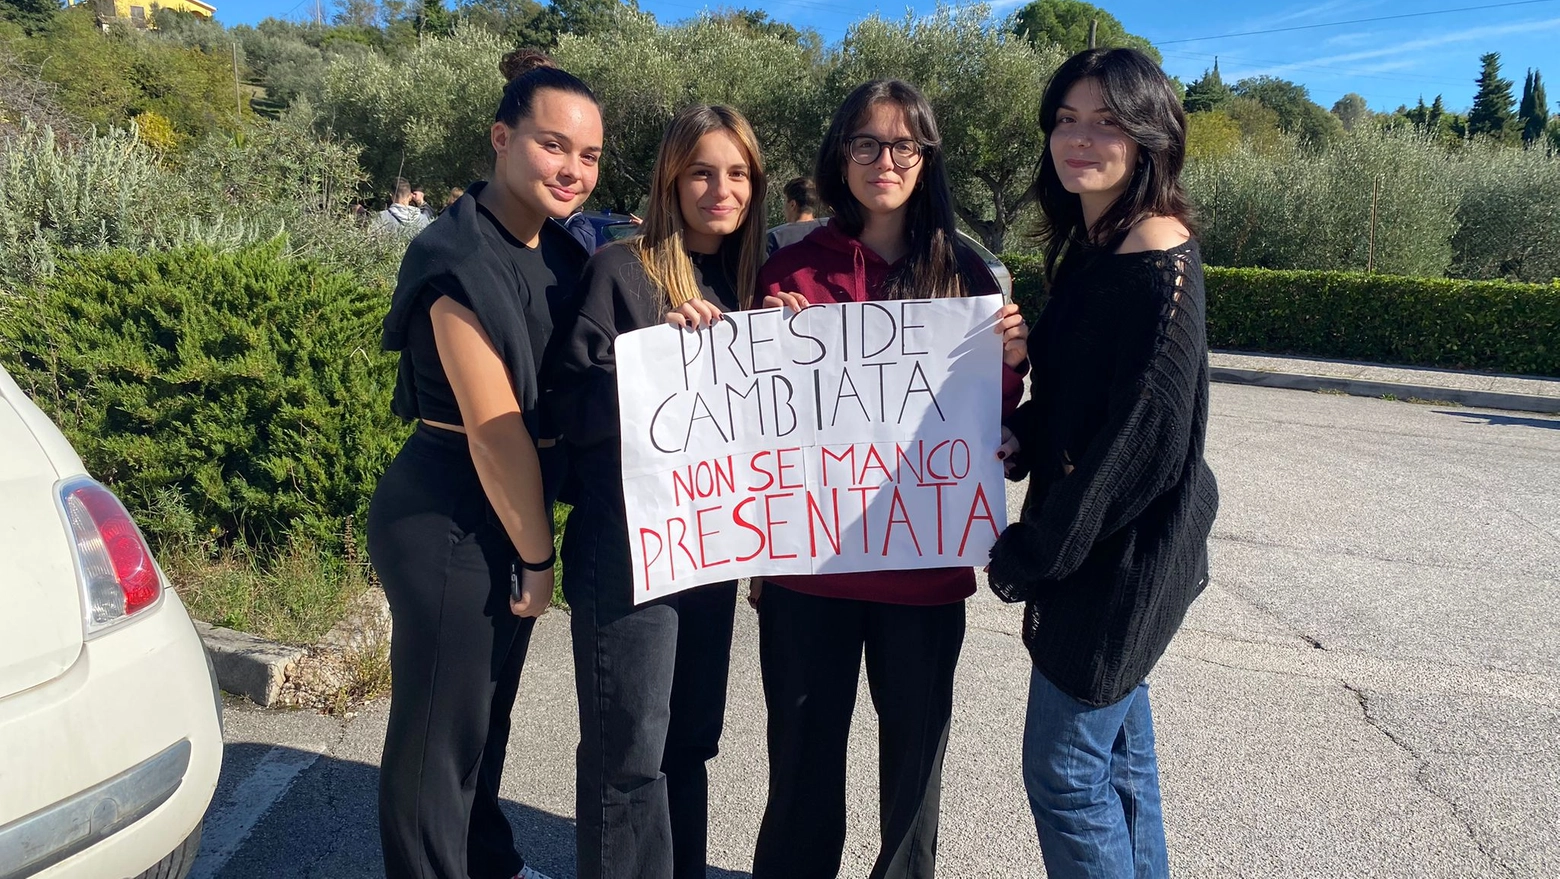 La protesta degli studenti a Civitanova Alta